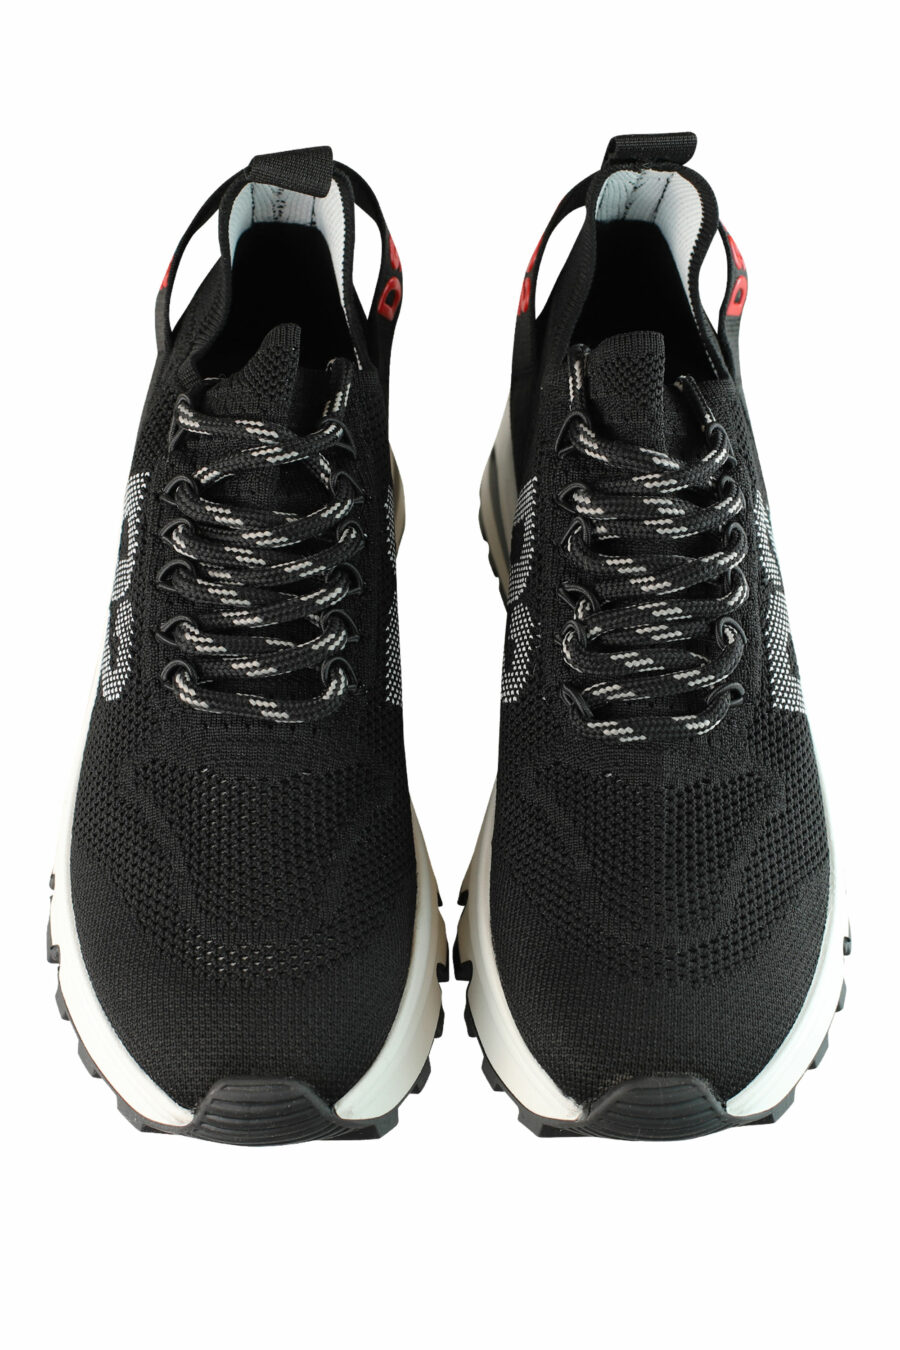 Zapatillas negras "Run D2" con logo en rojo - IMG 1367